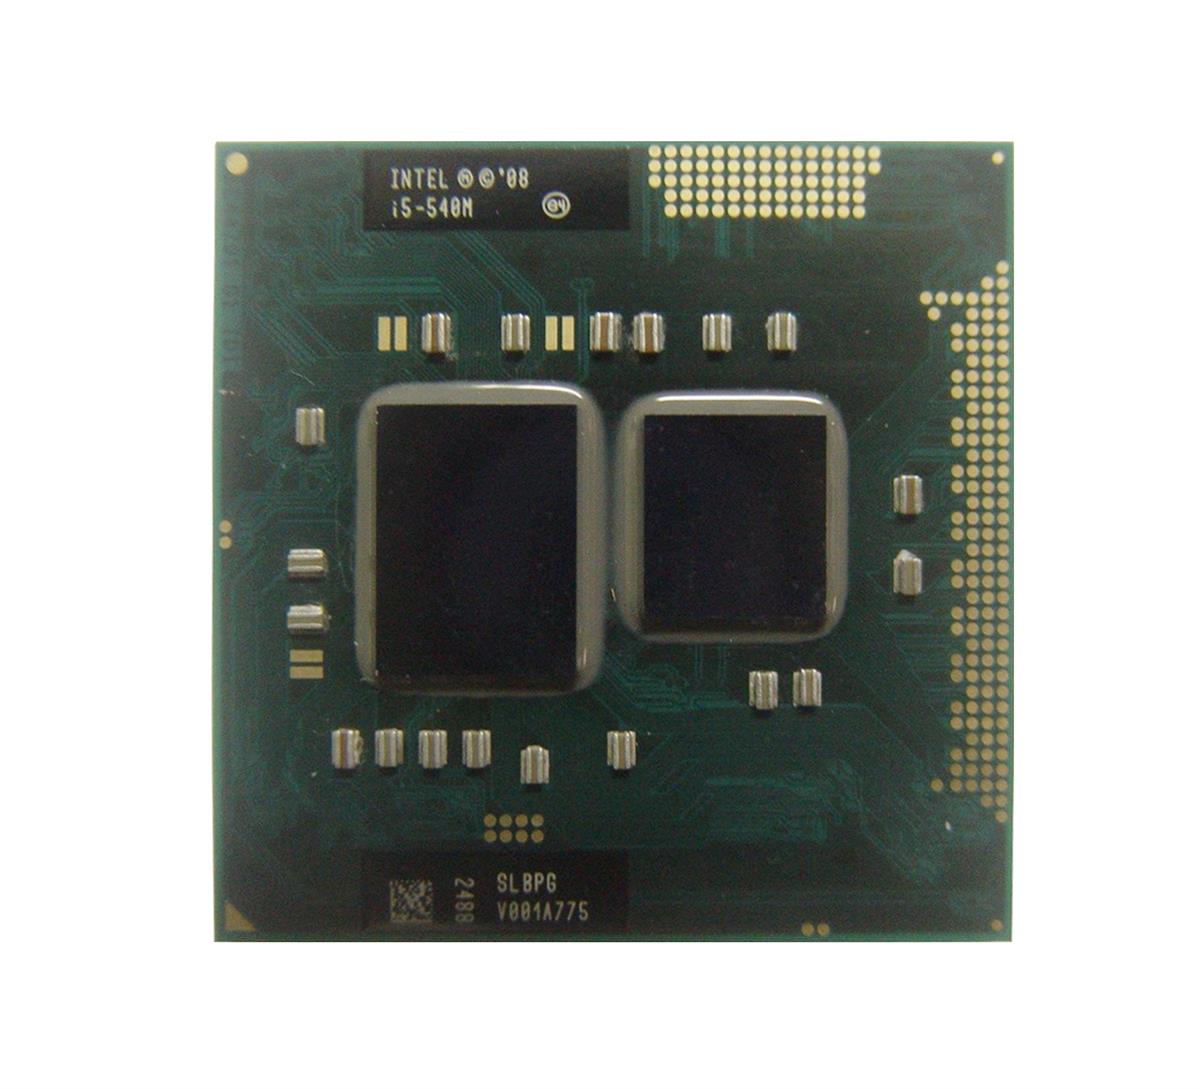 60Y5732-06 Lenovo 2.53GHz 2.50GT/s DMI 3MB L3 Cache Intel Core i5-540M Dual Core Mobile Processor Upgrade